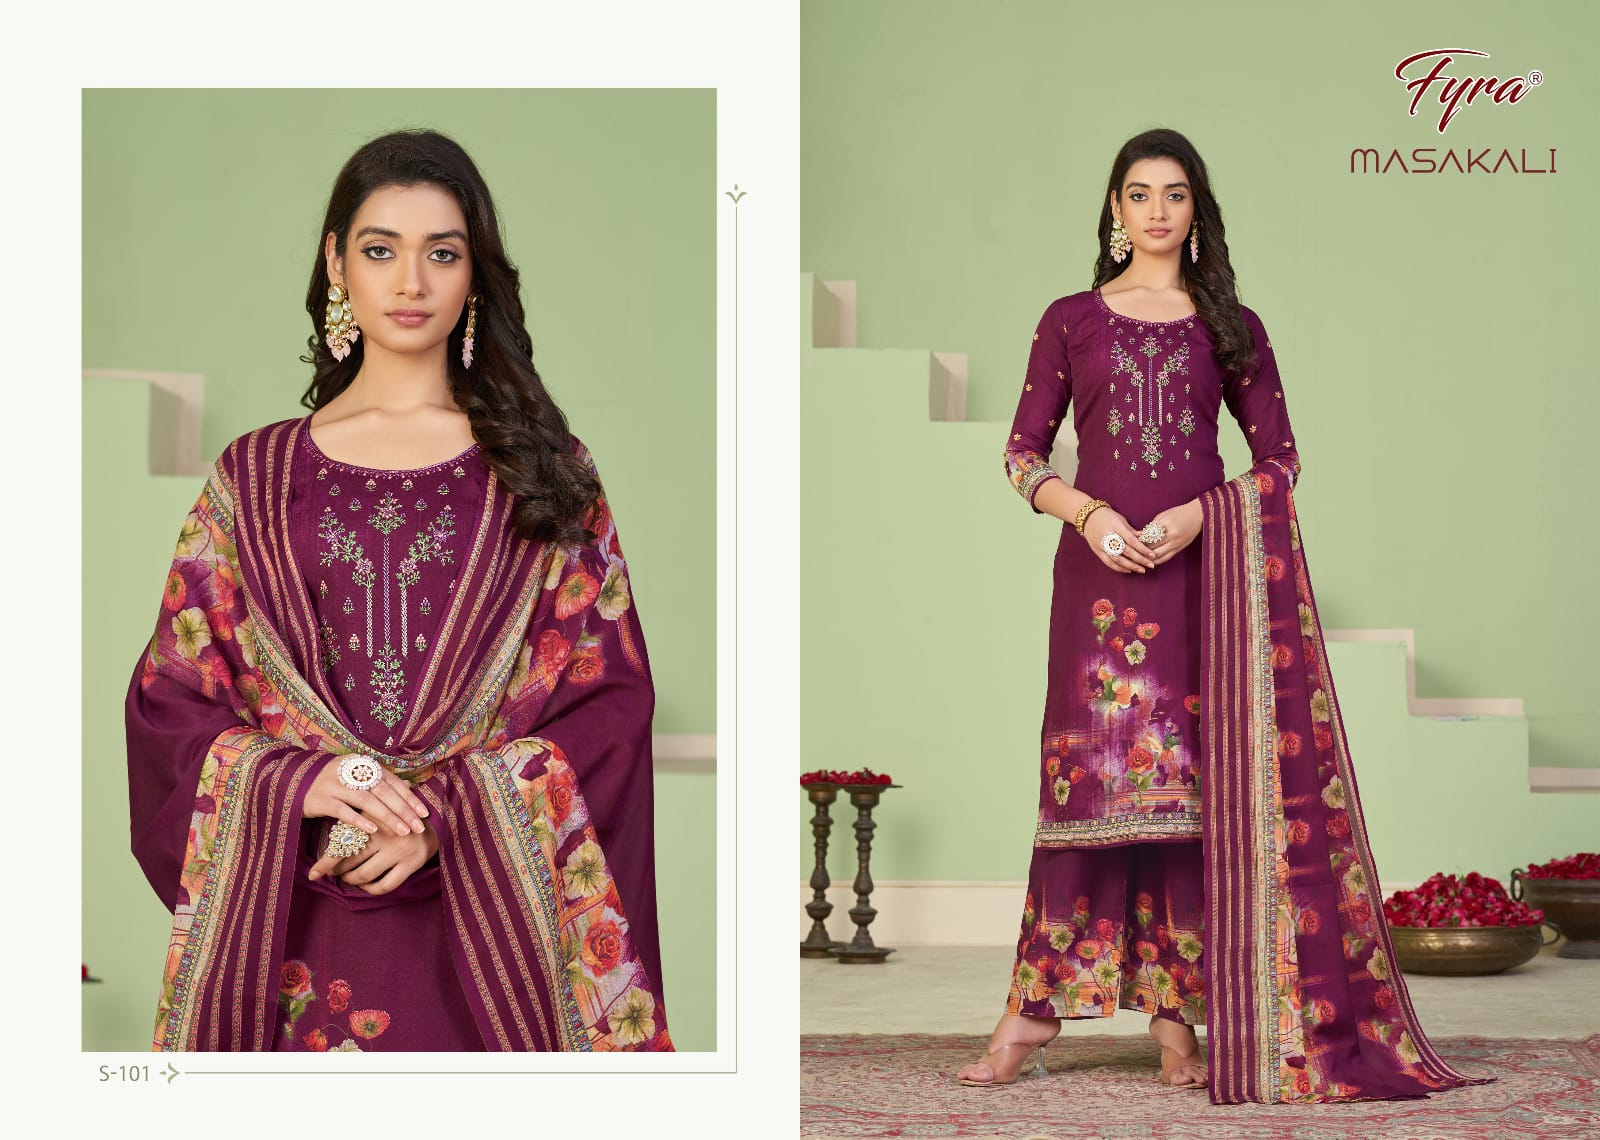 fyra alok suit masakali cotton regal look salwar suit catalog